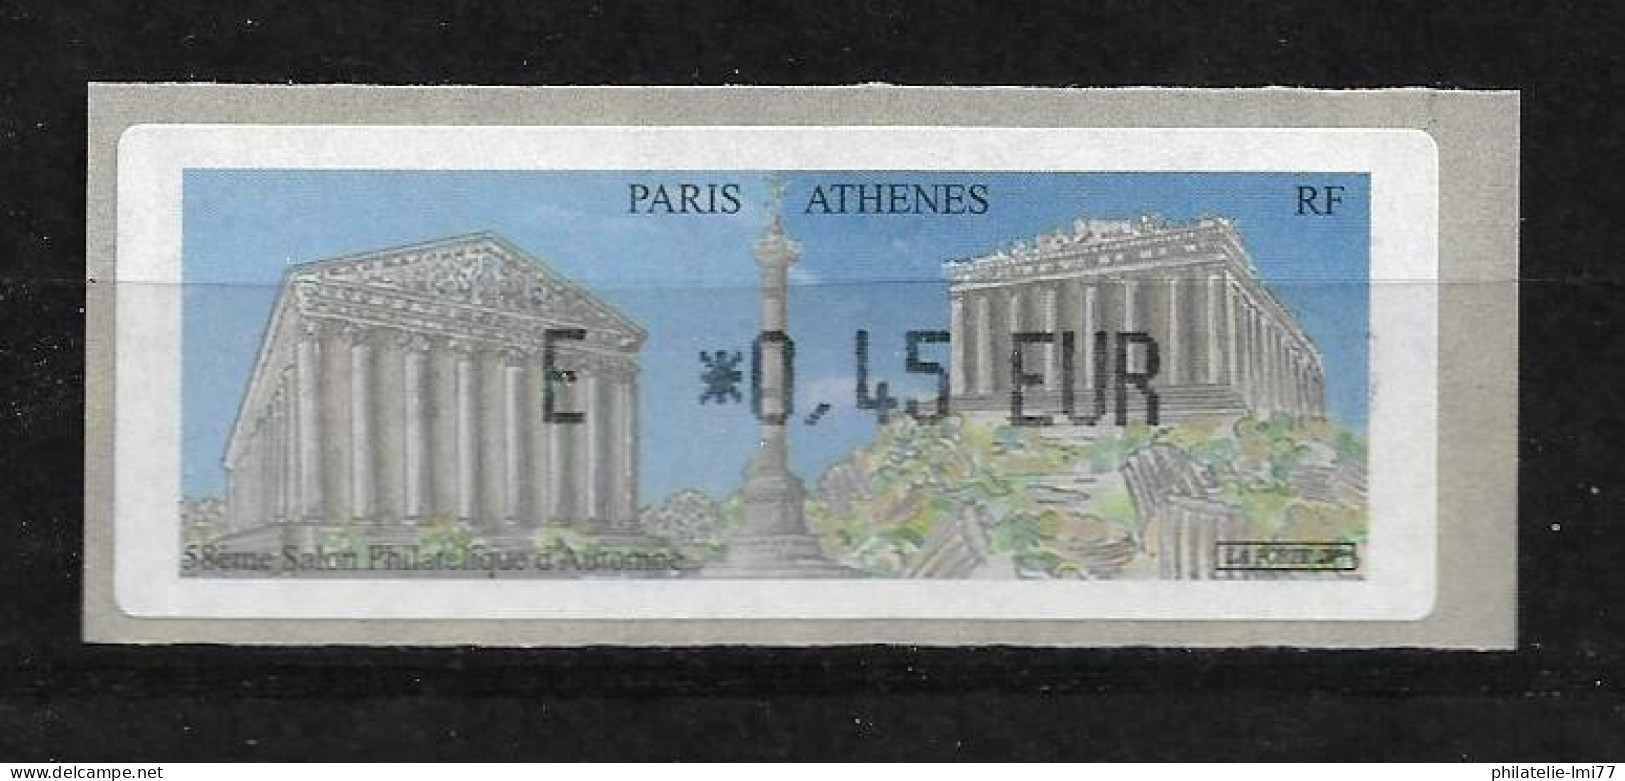 LISA 0,45 € - Paris Athènes - 58ème Salon Philatélique D'automne - 1999-2009 Illustrated Franking Labels